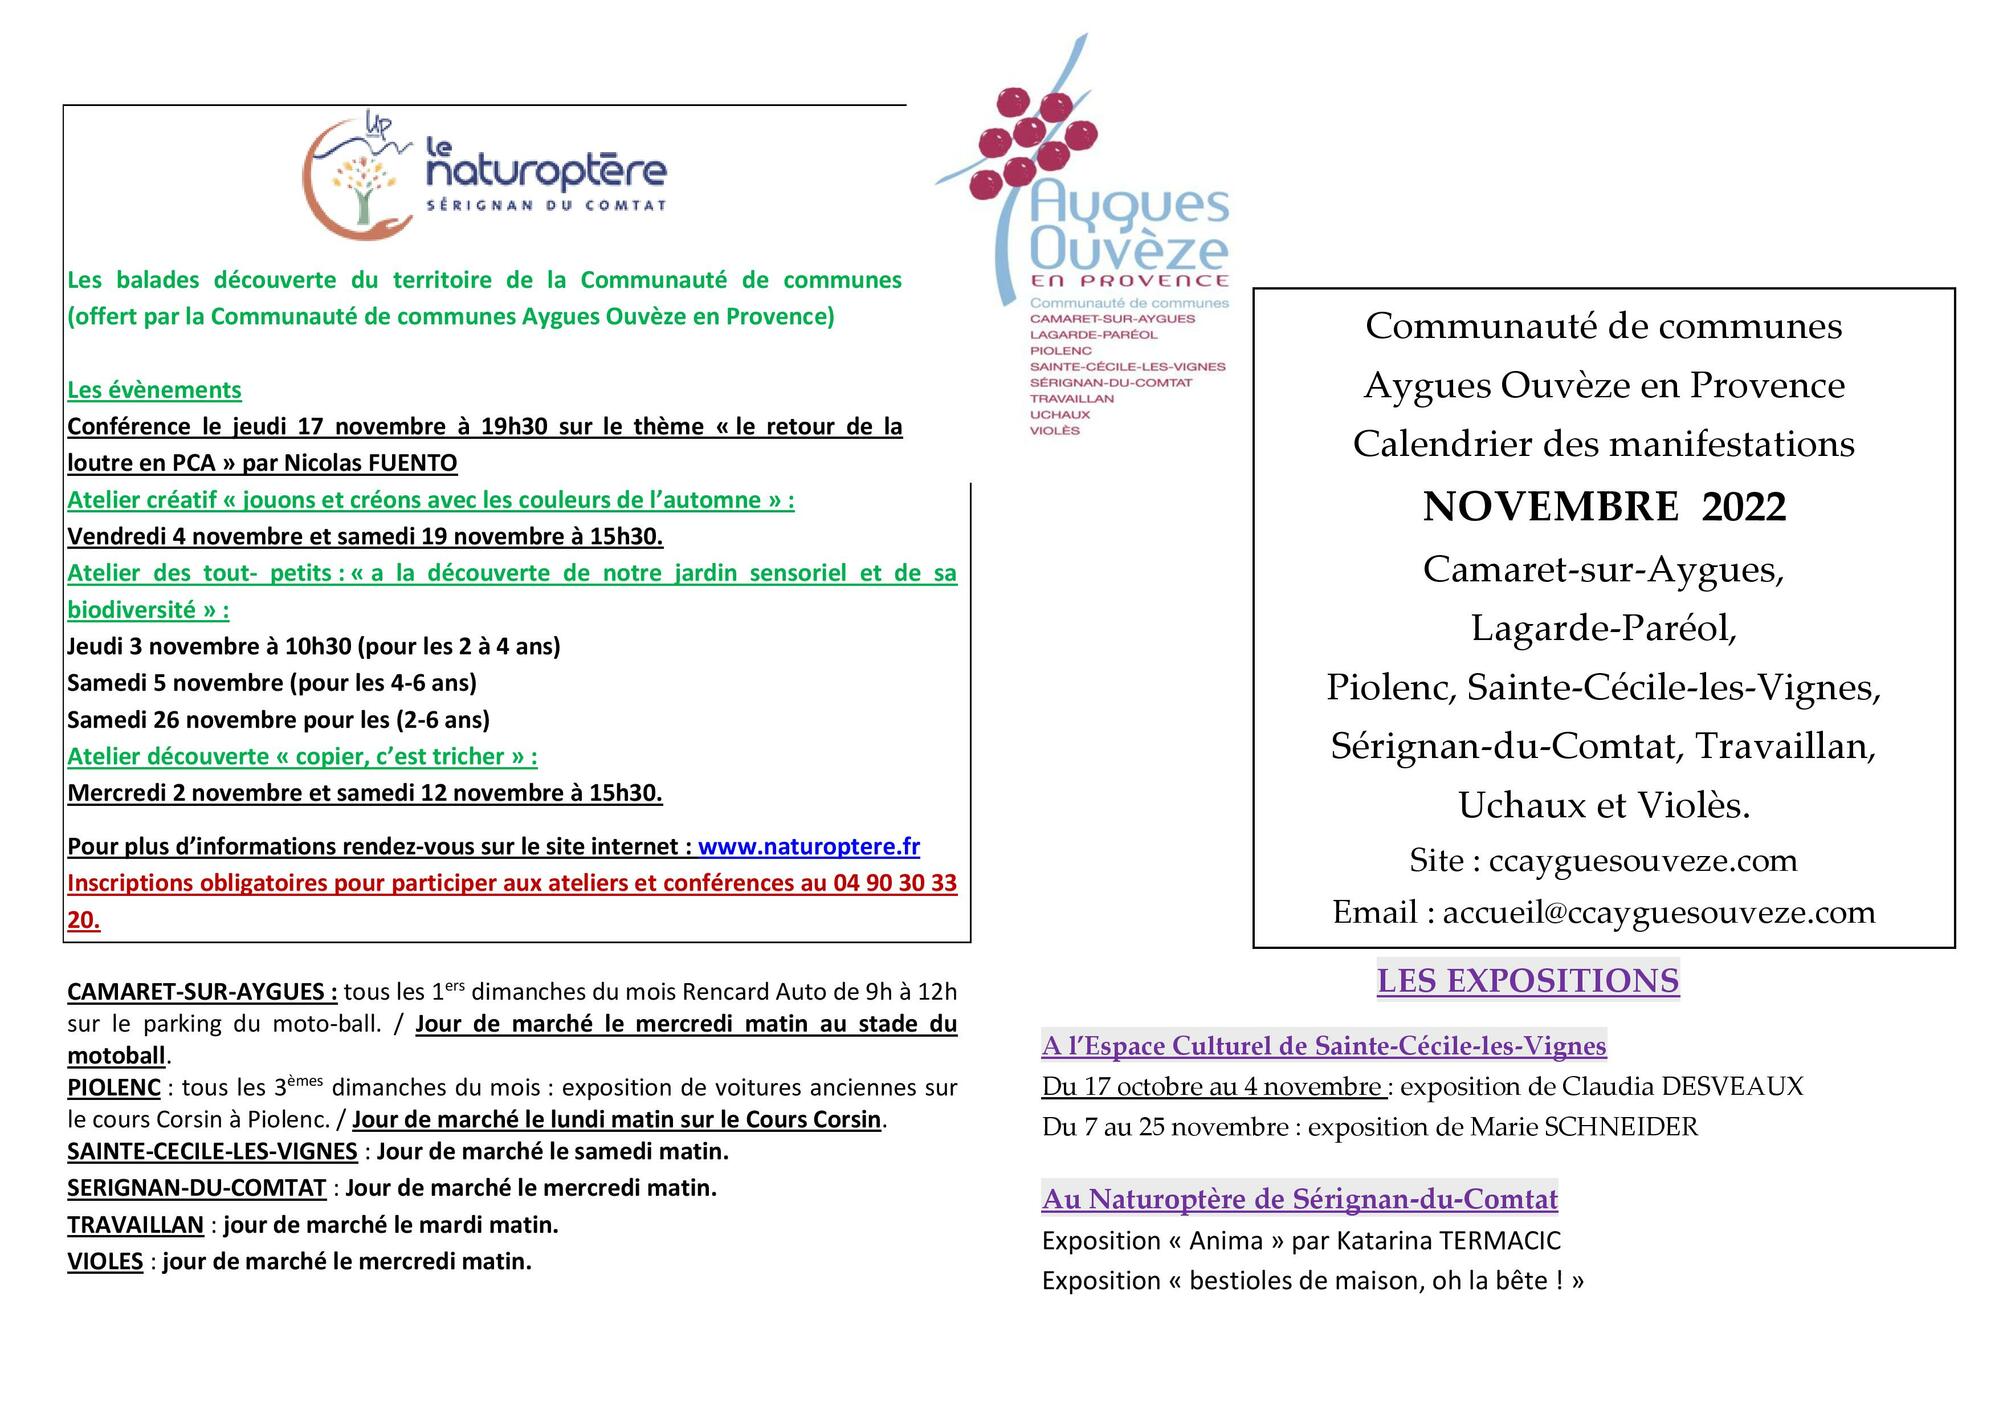 Agenda des manifestations du mois de novembre sur la Communauté de communes Aygues Ouvèze en Provence